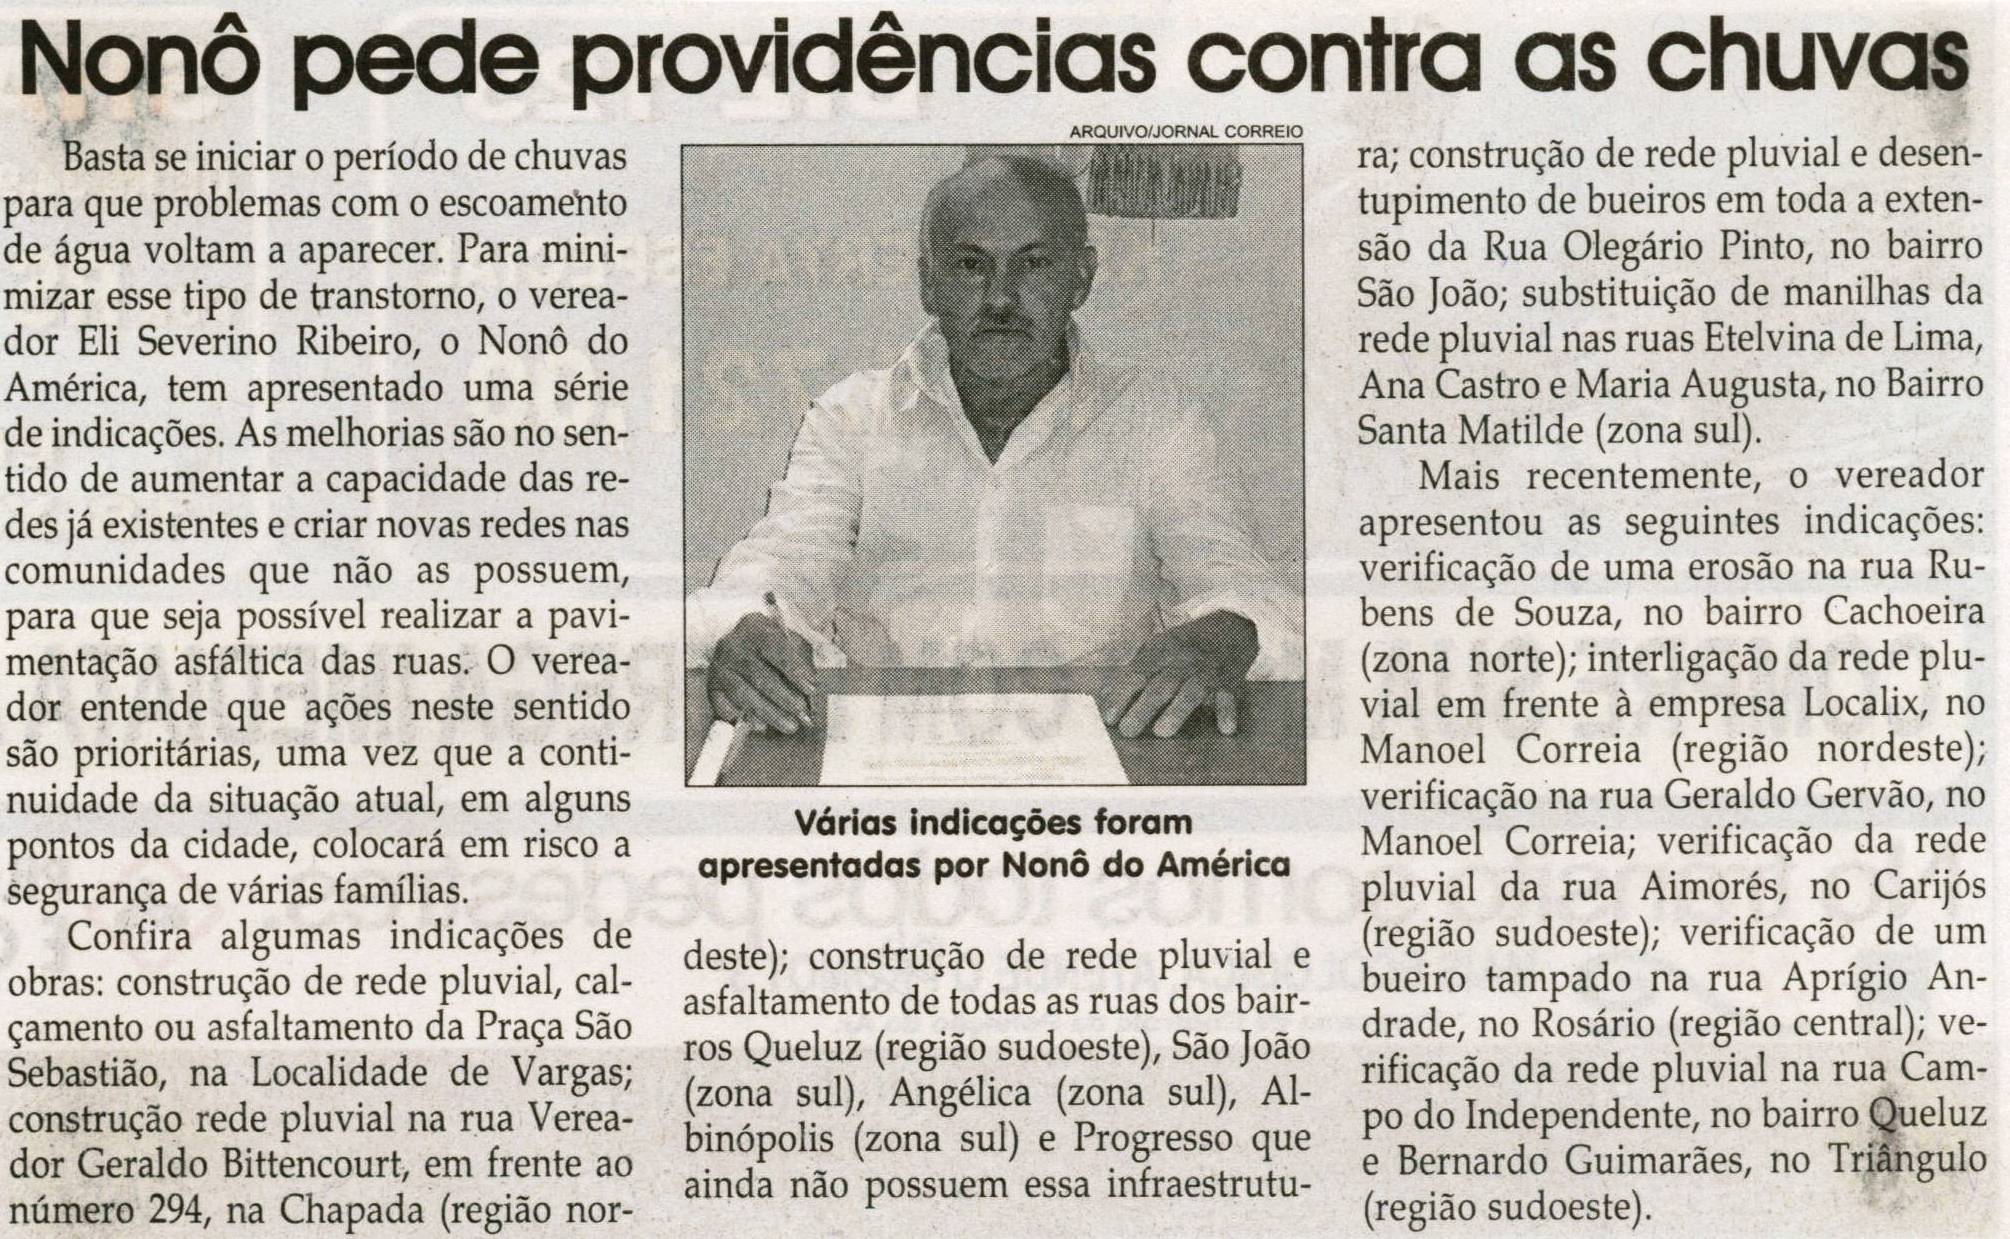 Nonô pede providências contra as chuvas. Jornal Correio da Cidade, Conselheiro Lafaiete, 13 nov. 2010, p. 04.